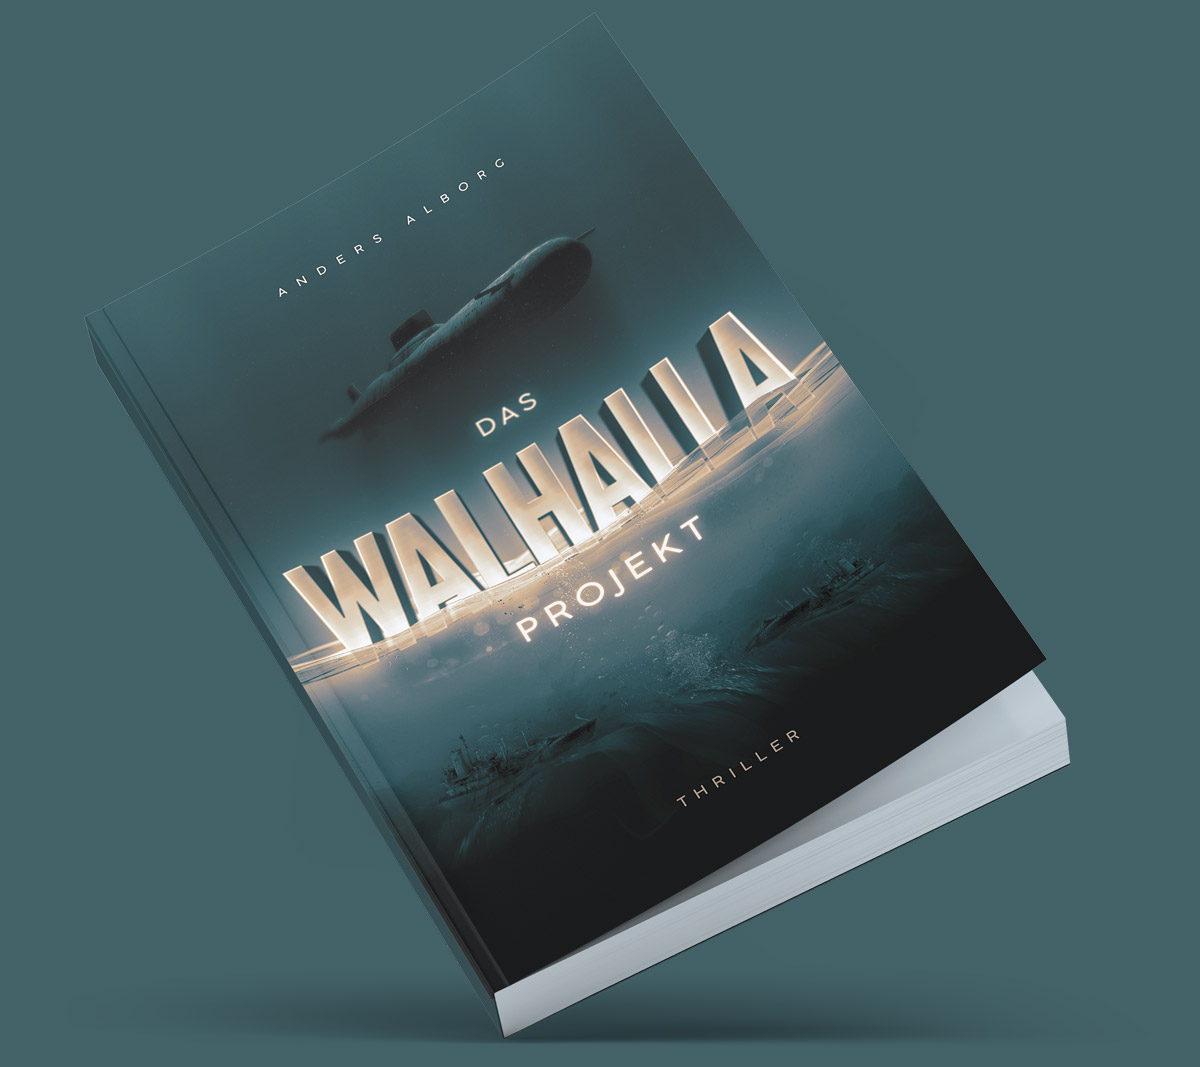 Das Walhalla Projekt